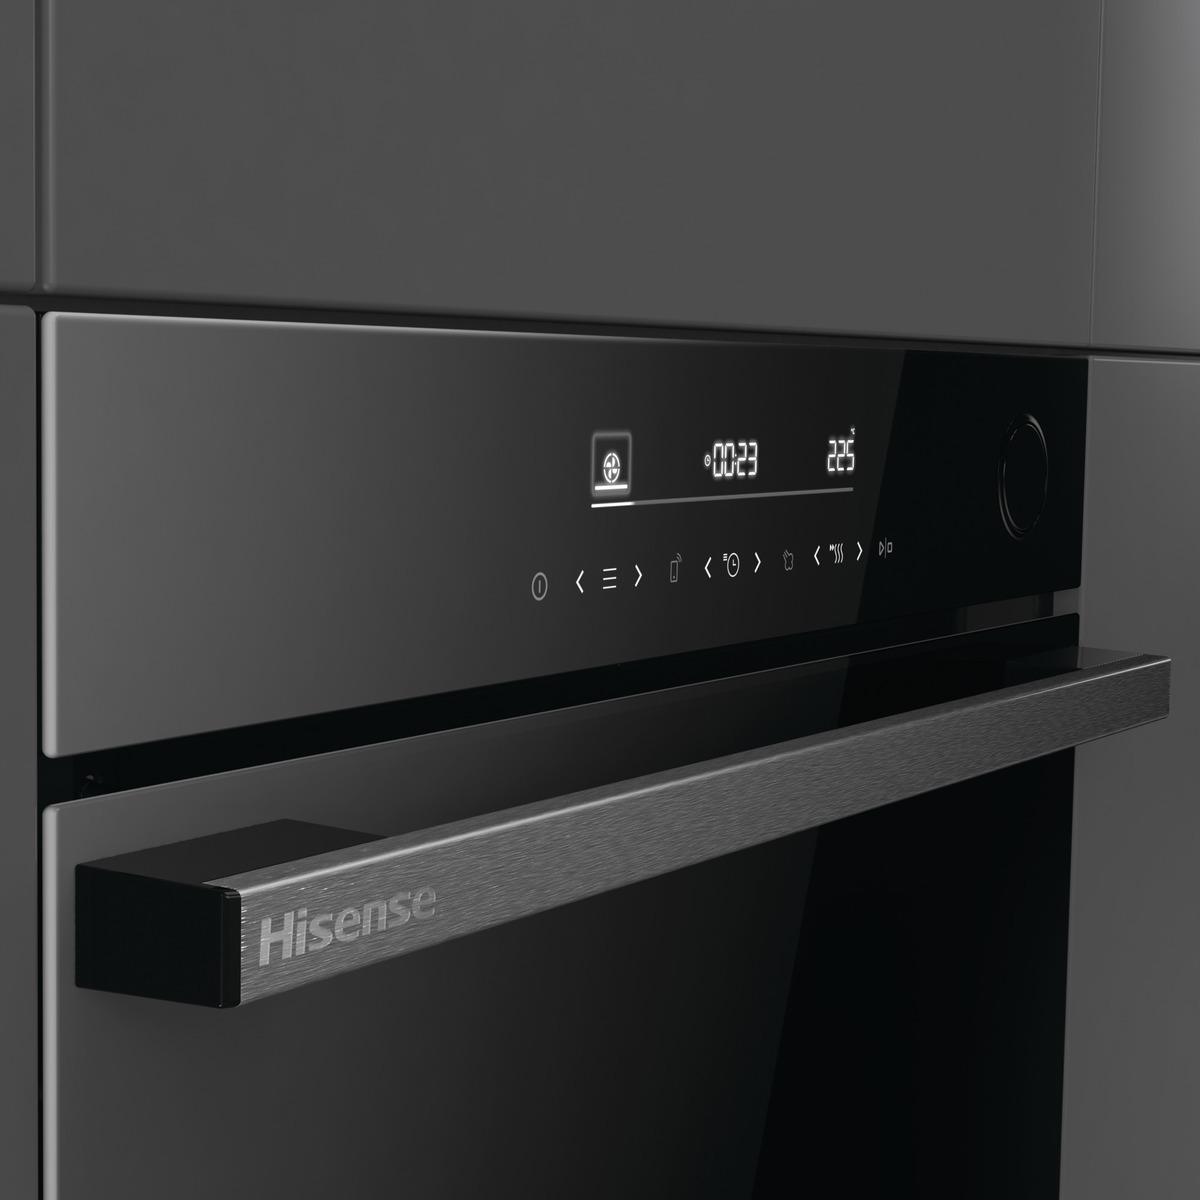 The new range of Hisense Blackline ovens is arriving